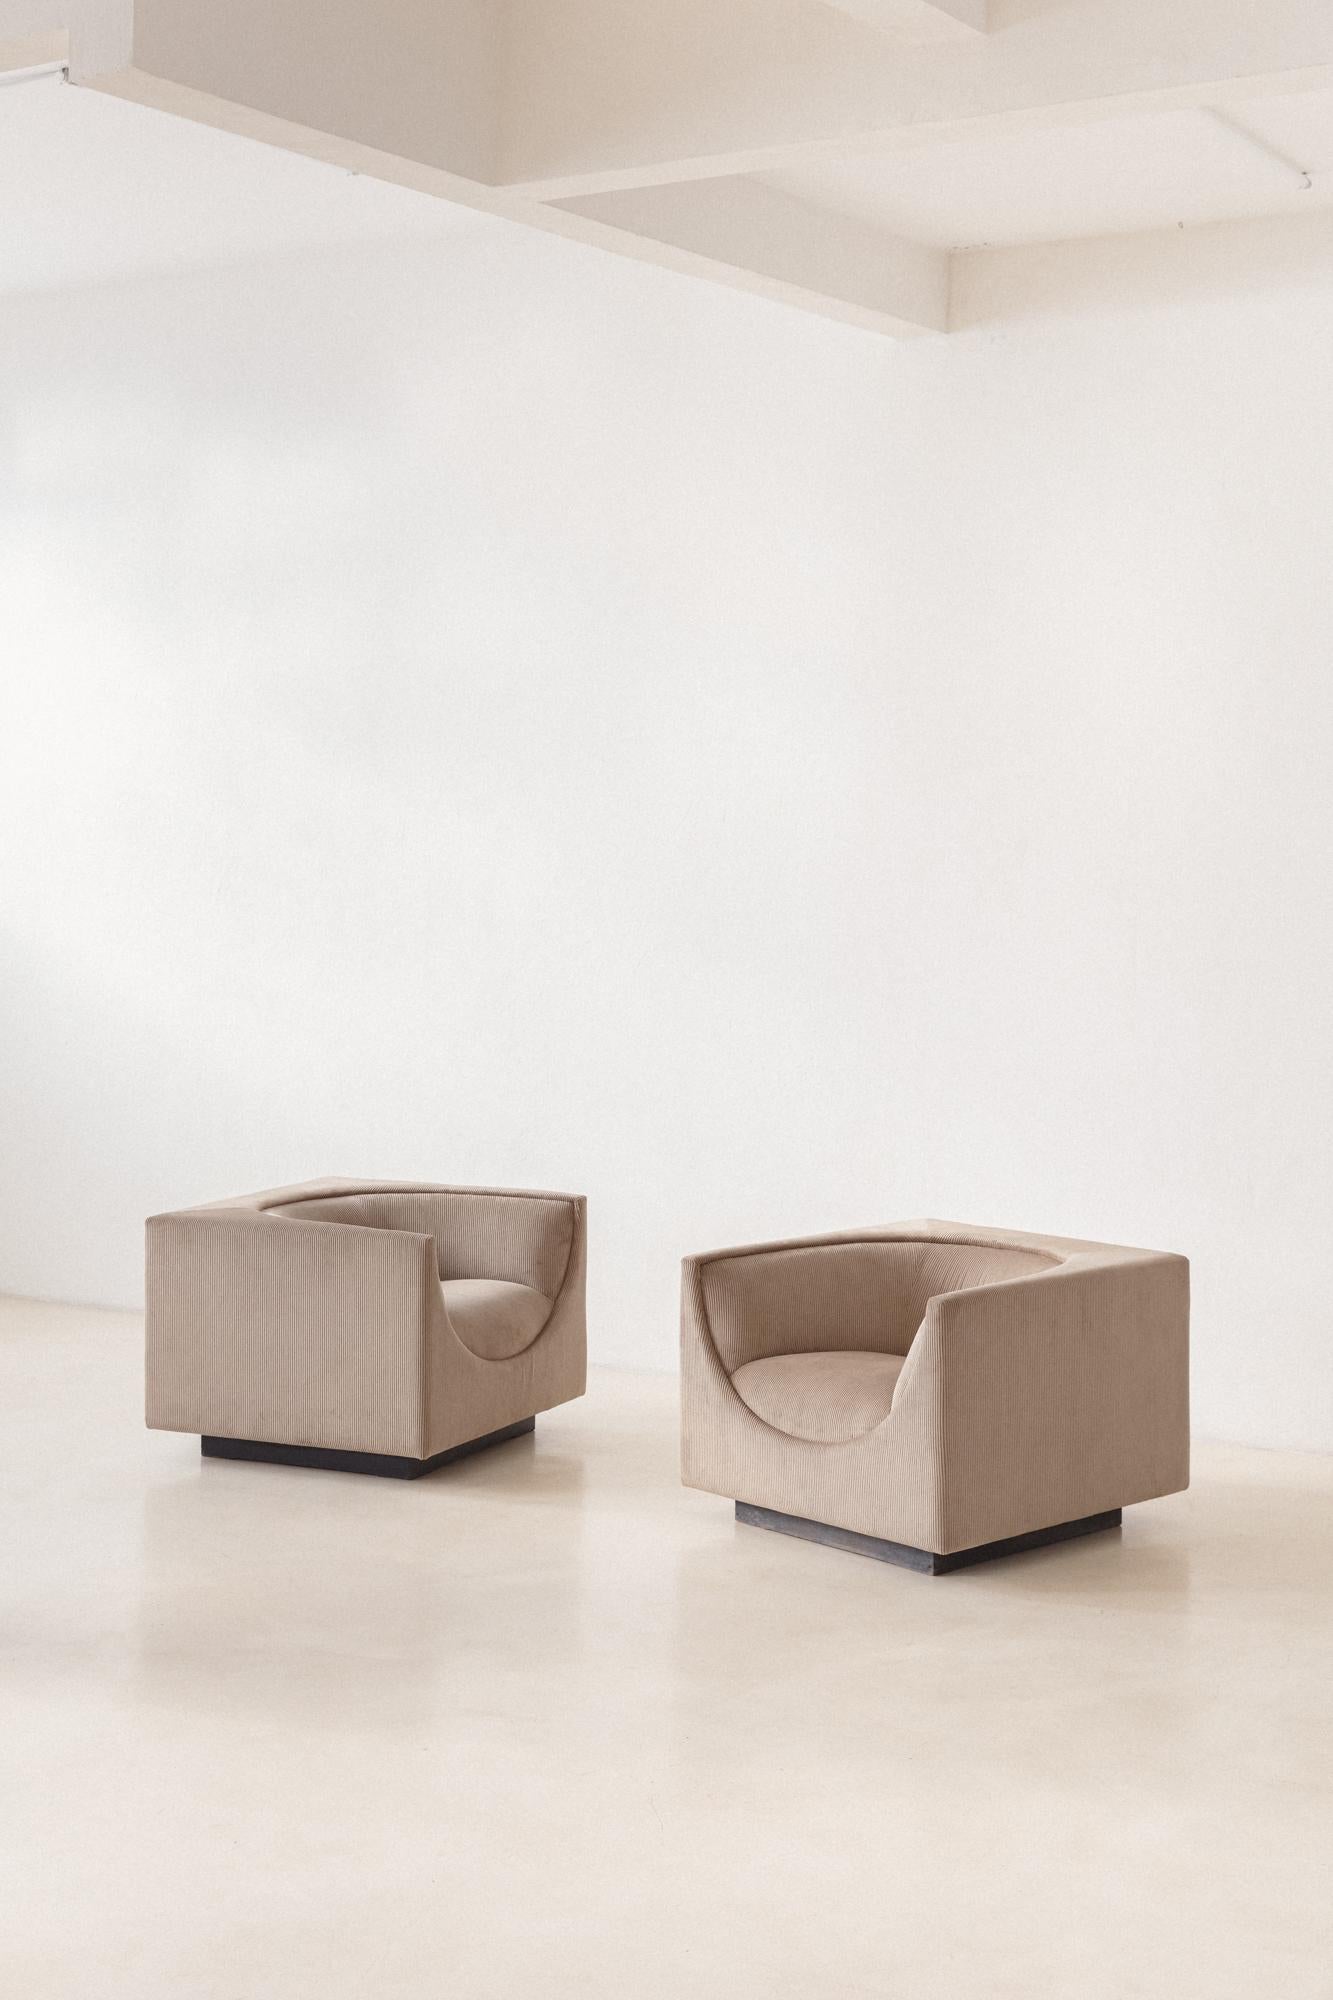 Cette magnifique paire de fauteuils Cube est une déclaration en soi. La collection Cube est une création de Jorge Zalszupin (1922-2020), conçue vers 1970, et elle nous laisse toujours bouche bée.  

L'élégance, caractéristique des designs de